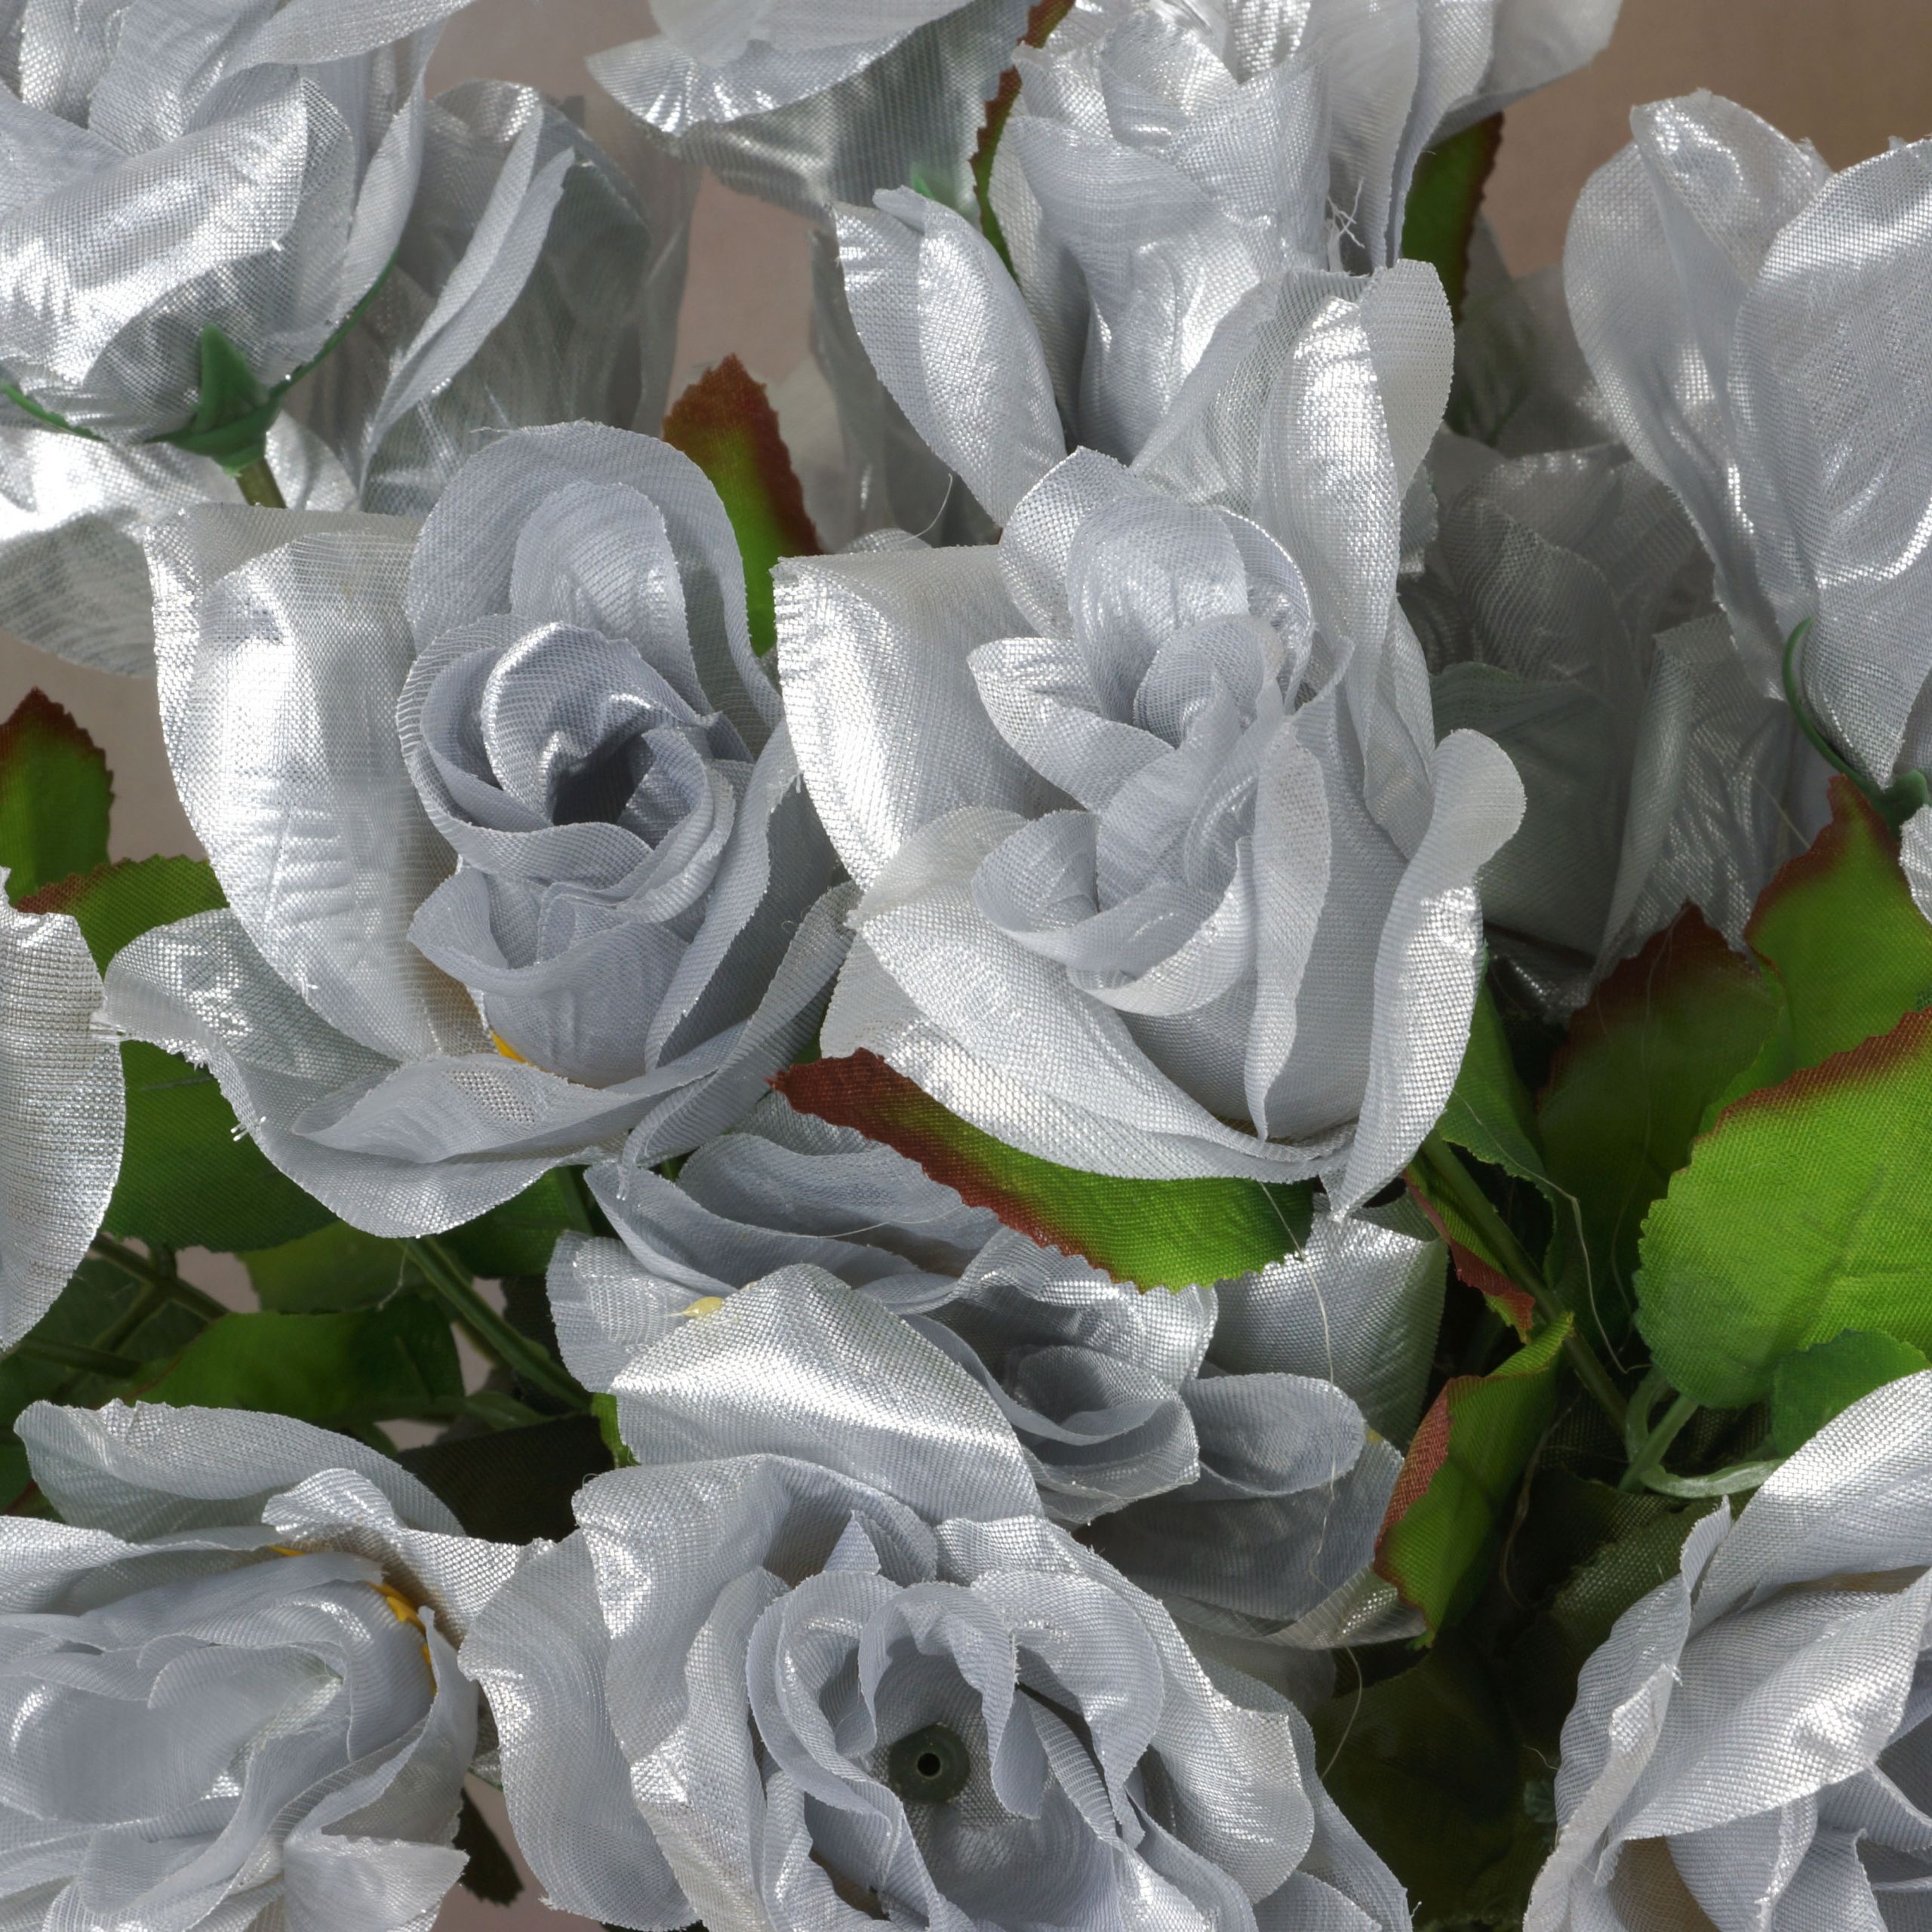 Wholesale Flowers For Weddings
 336 VELVET BLOOM OPEN ROSES Wholesale Wedding Flowers